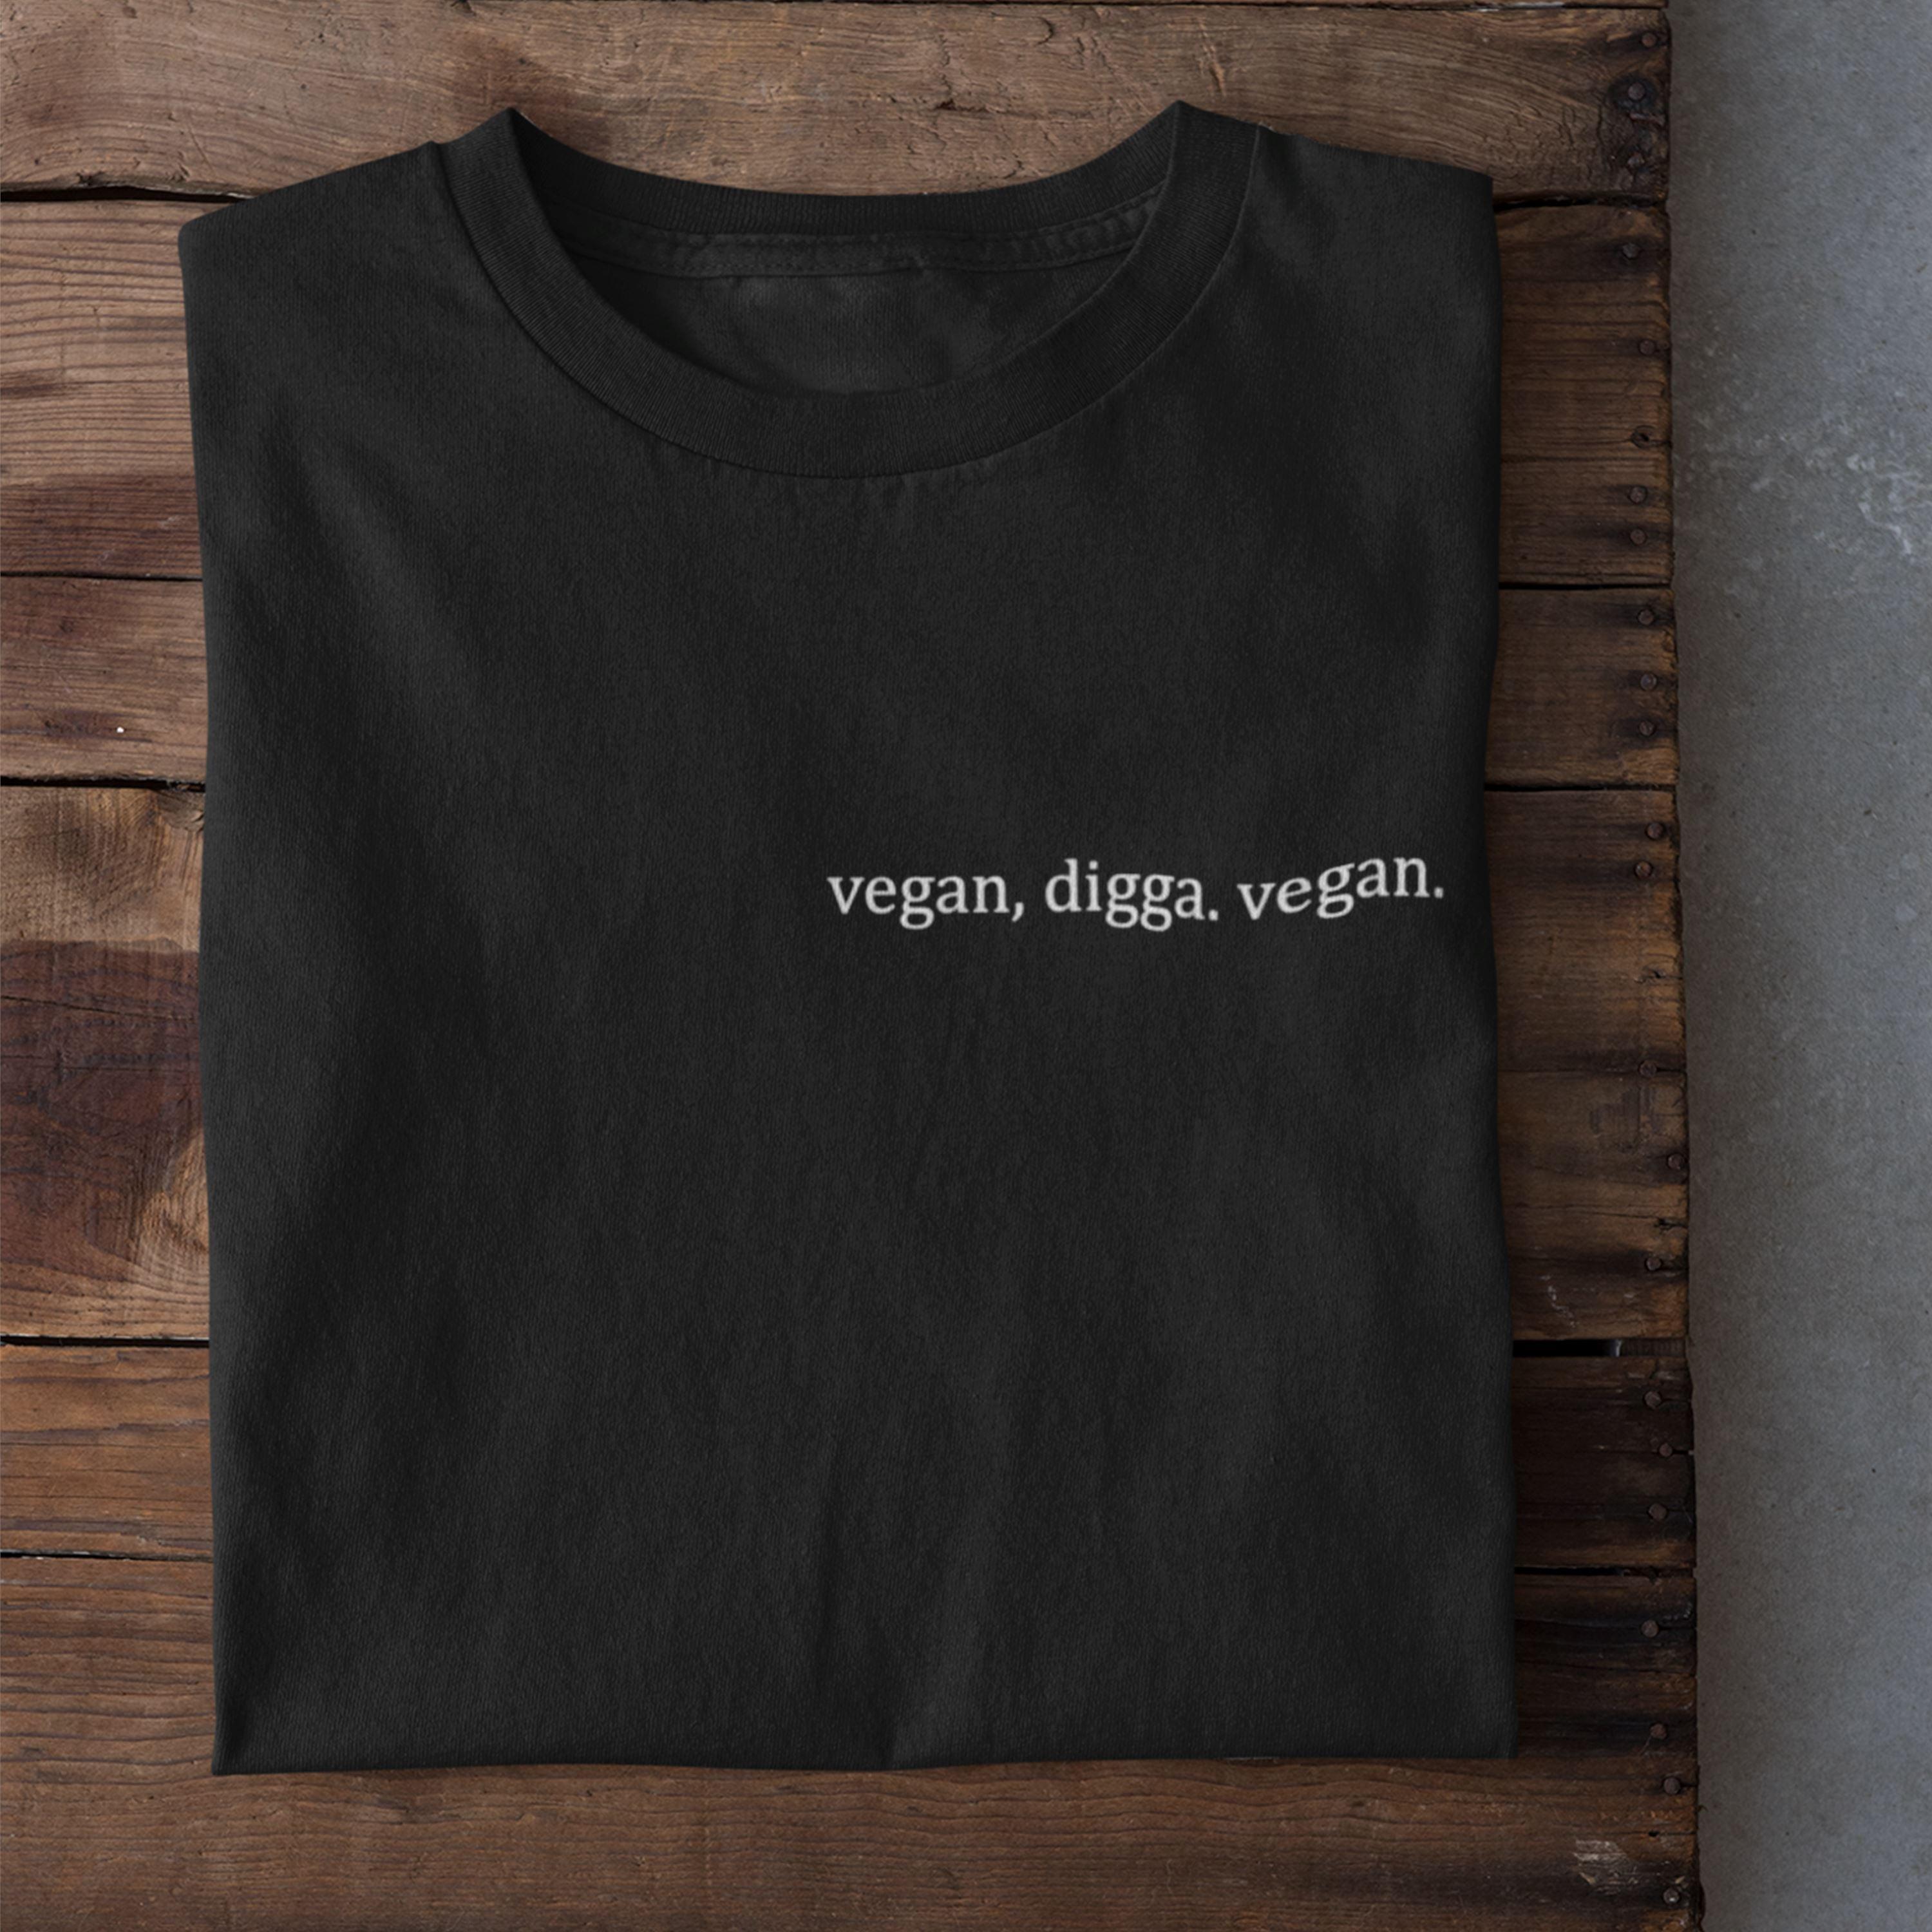 vegan, digga. vegan. - Unisex Organic Shirt Rocker T-Shirt ST/ST Shirtee 